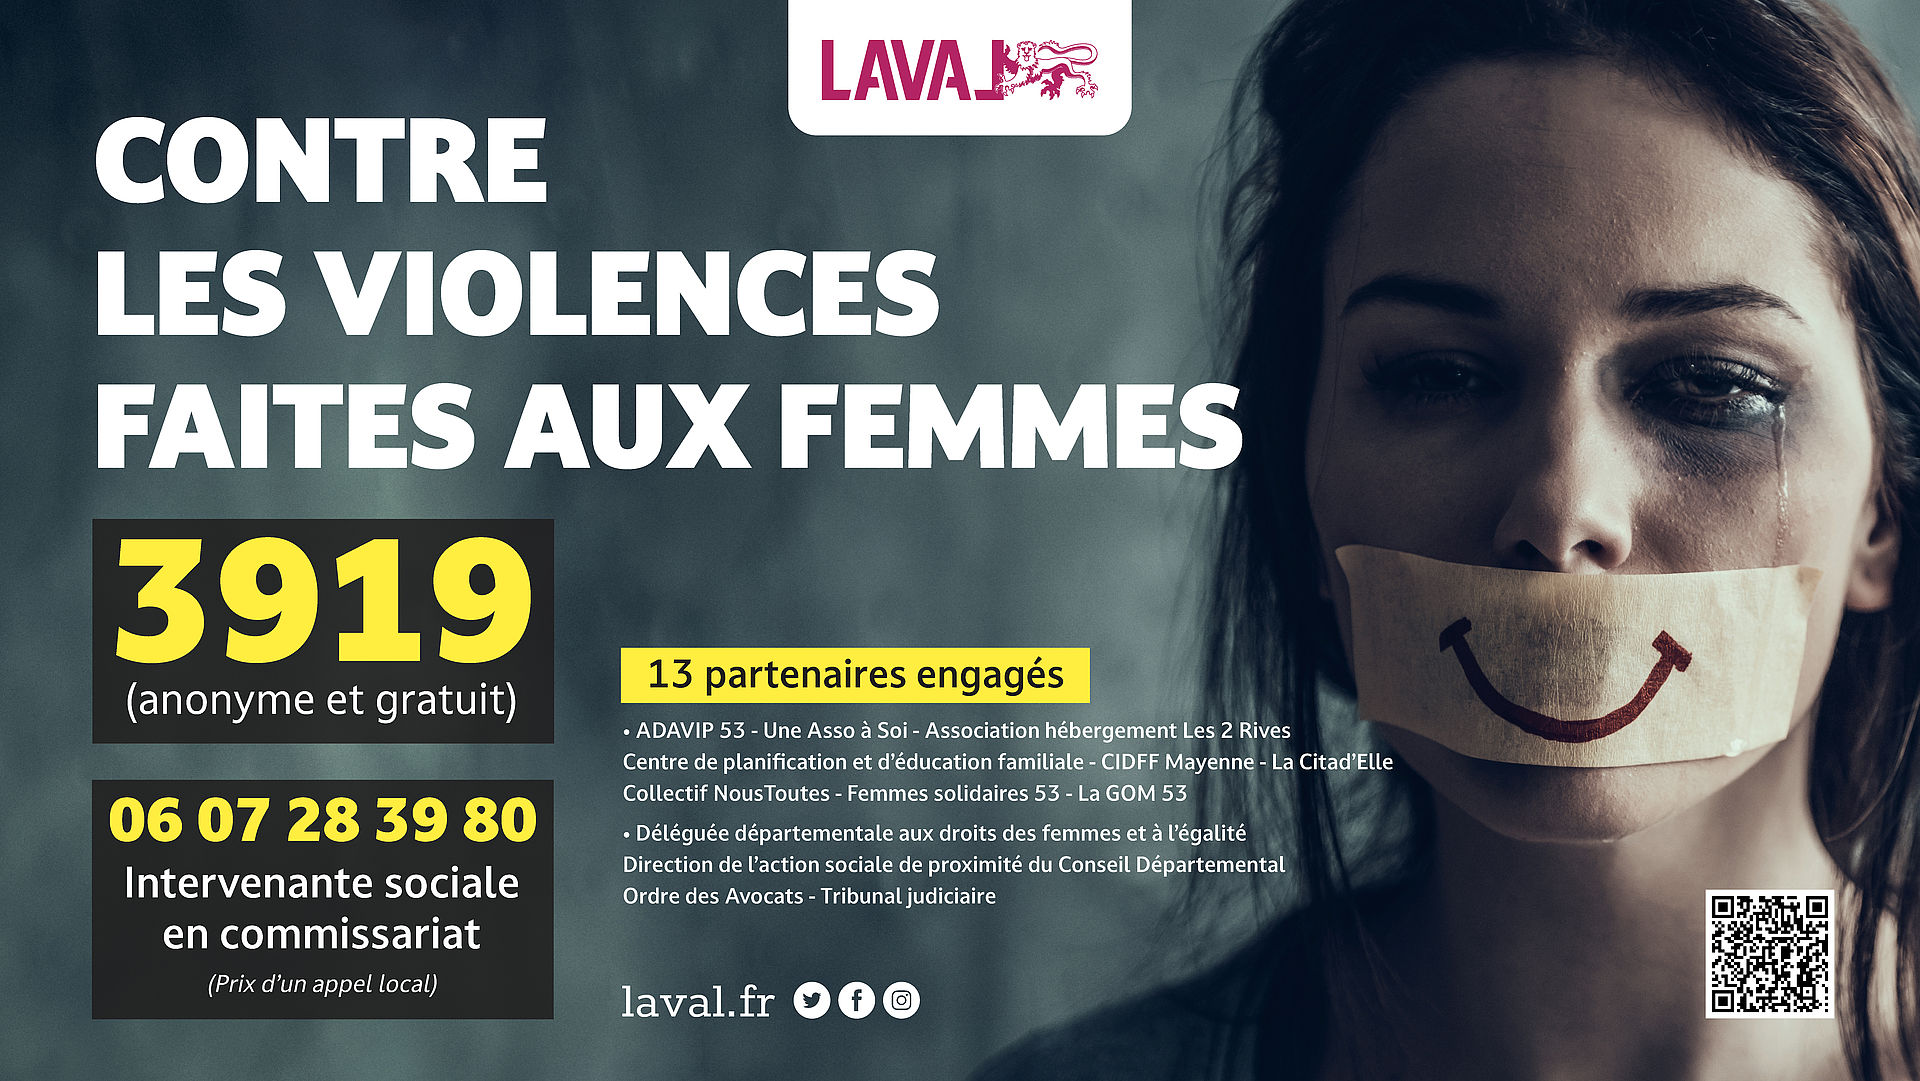 https://www.laval.fr/fileadmin/documents/CONTRE_LES_DISCRIMINATIONS/affiche_violences_femmes.jpg